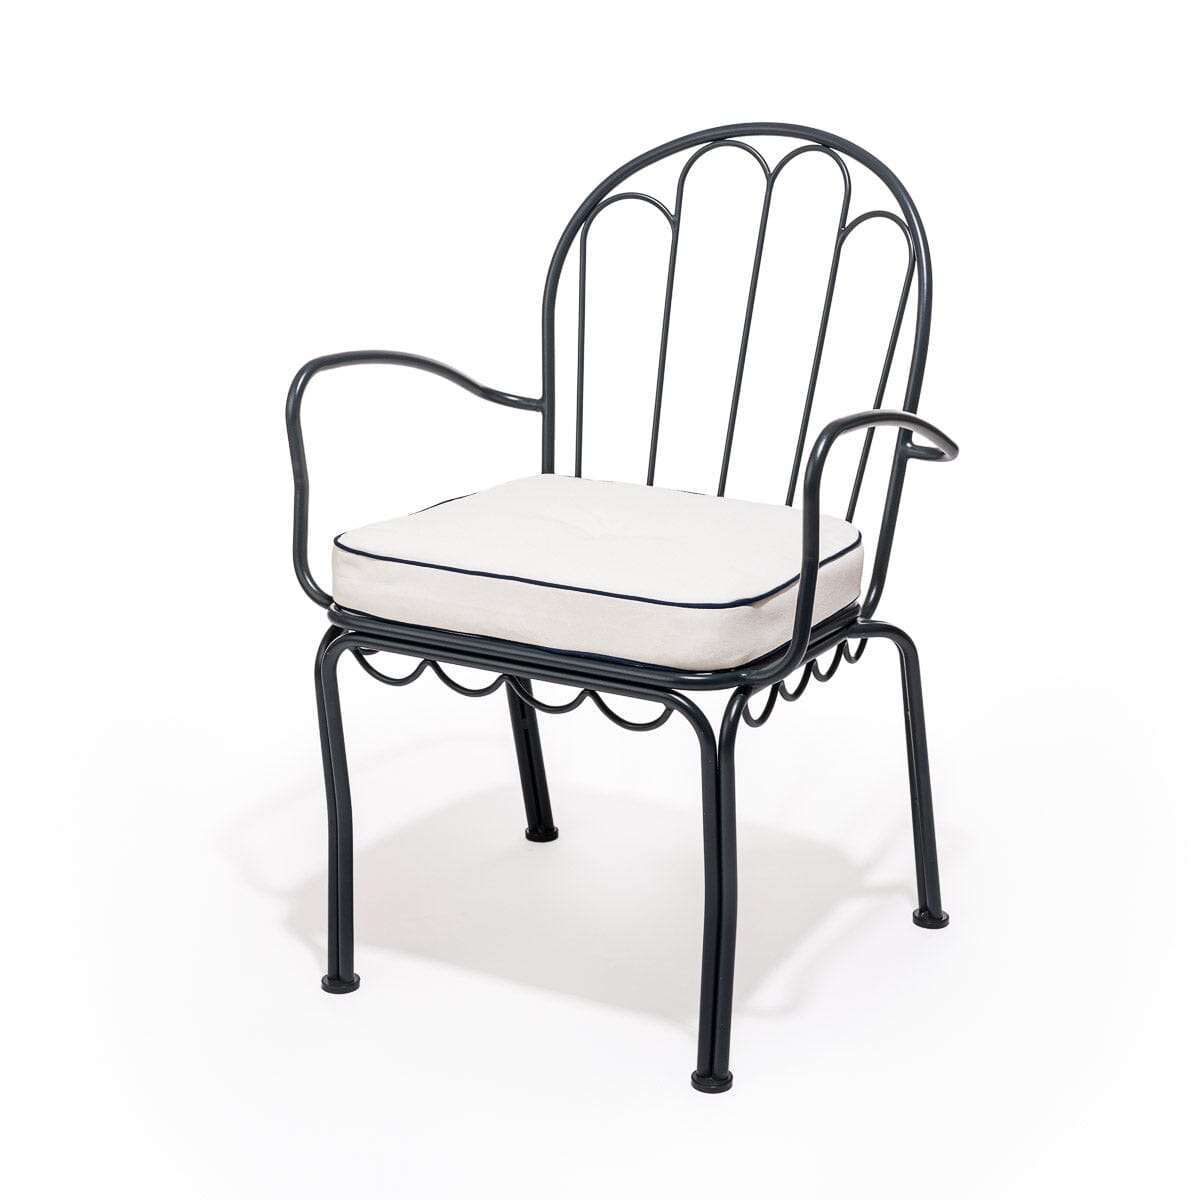 The Al Fresco Chair Cushion - Rivie White Al Fresco Chair Cushion Business & Pleasure Co 